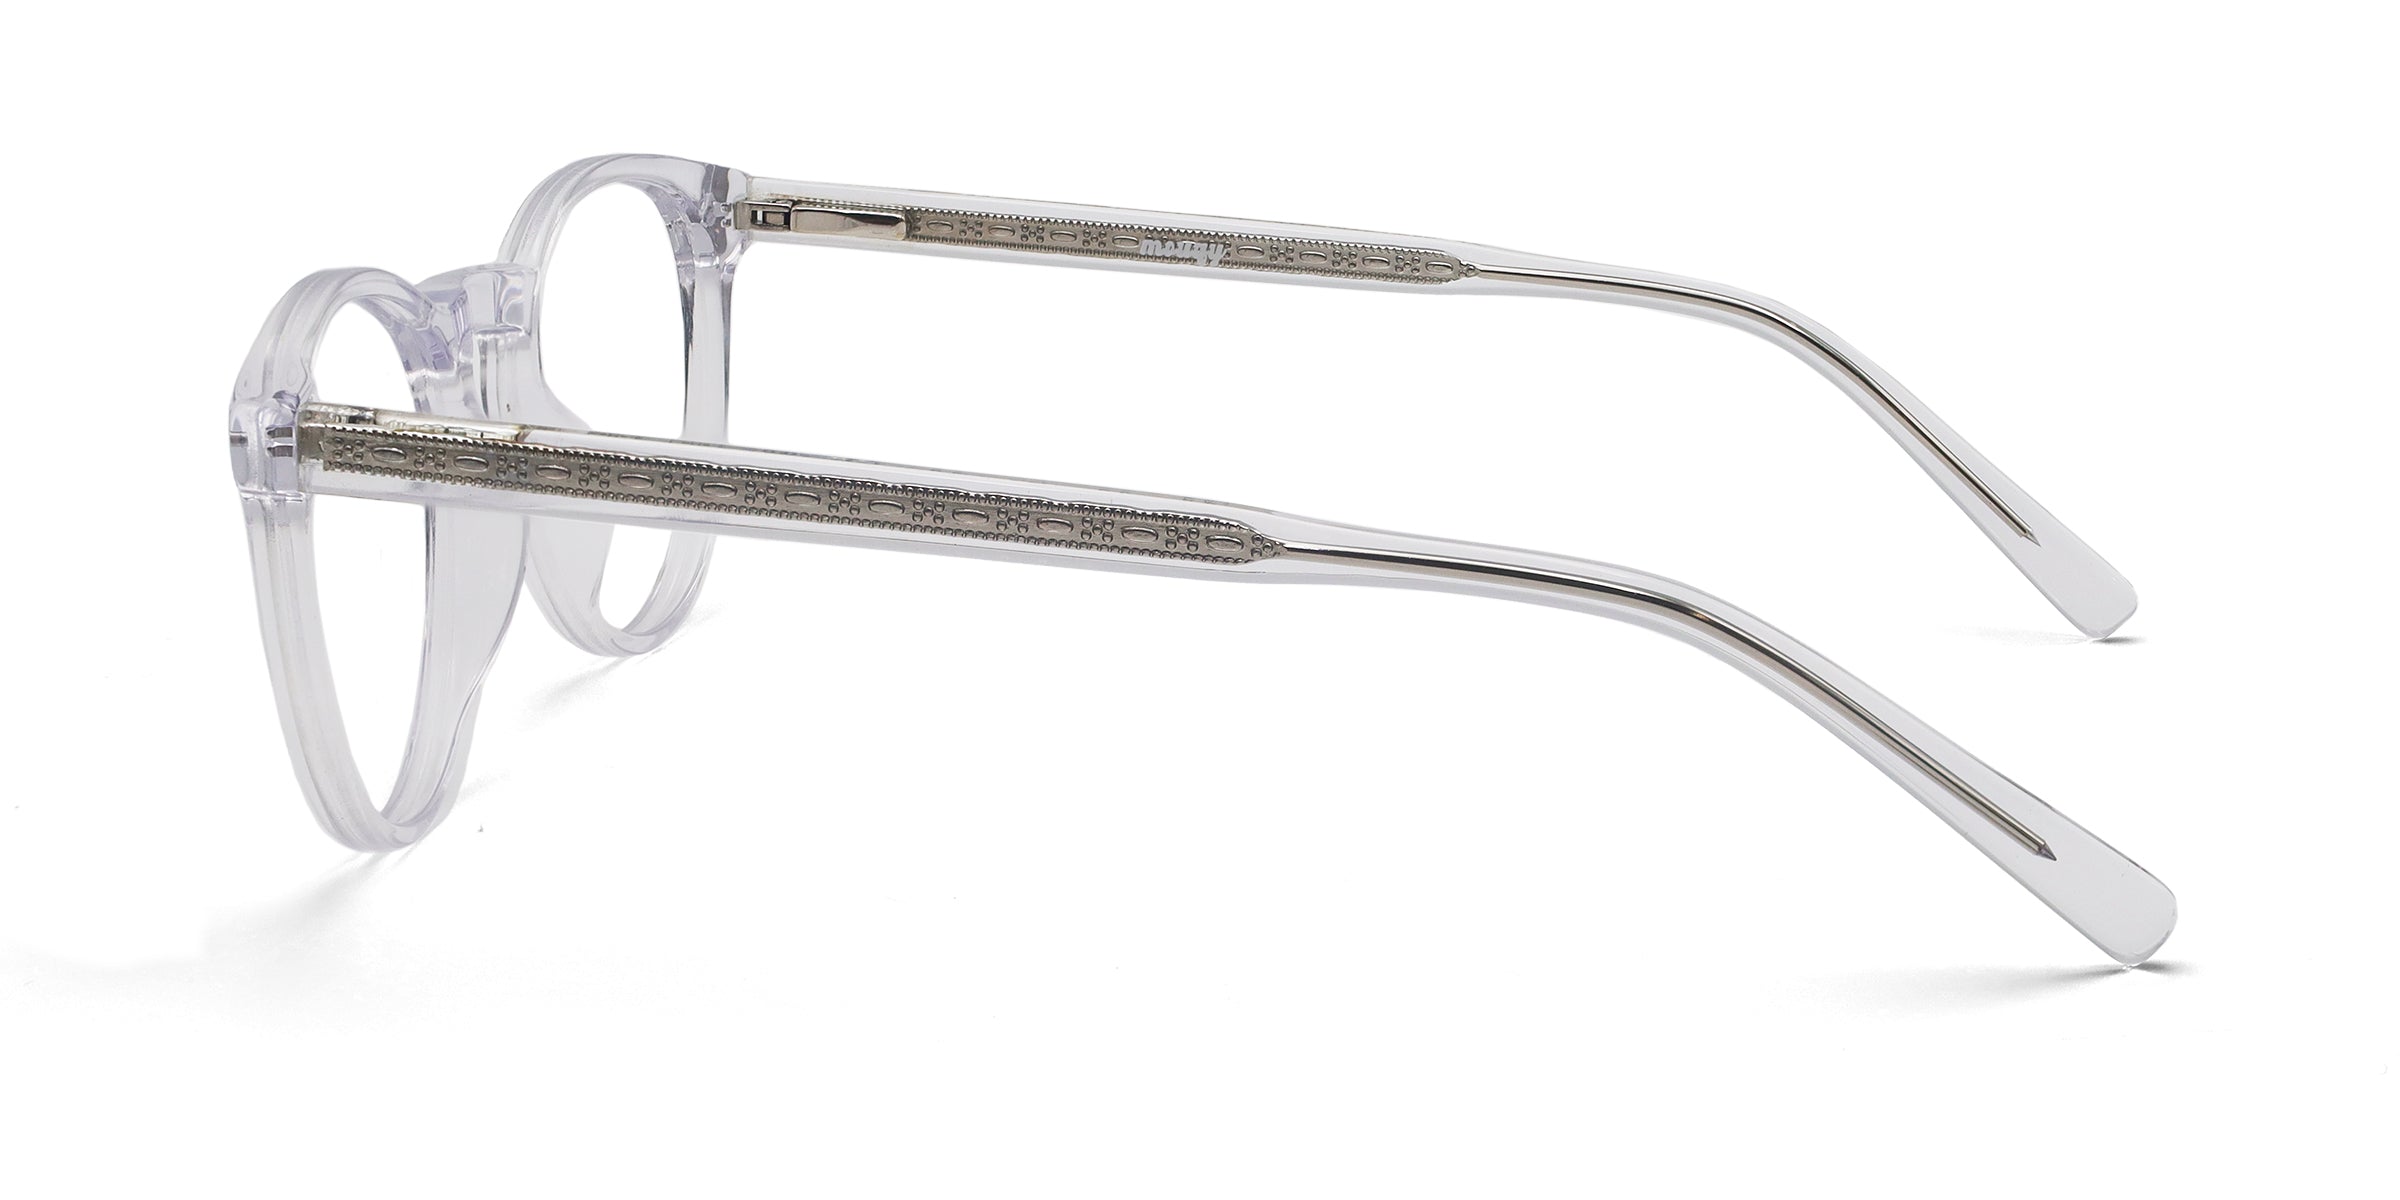 Kingly Oval Transparent eyeglasses frames side view